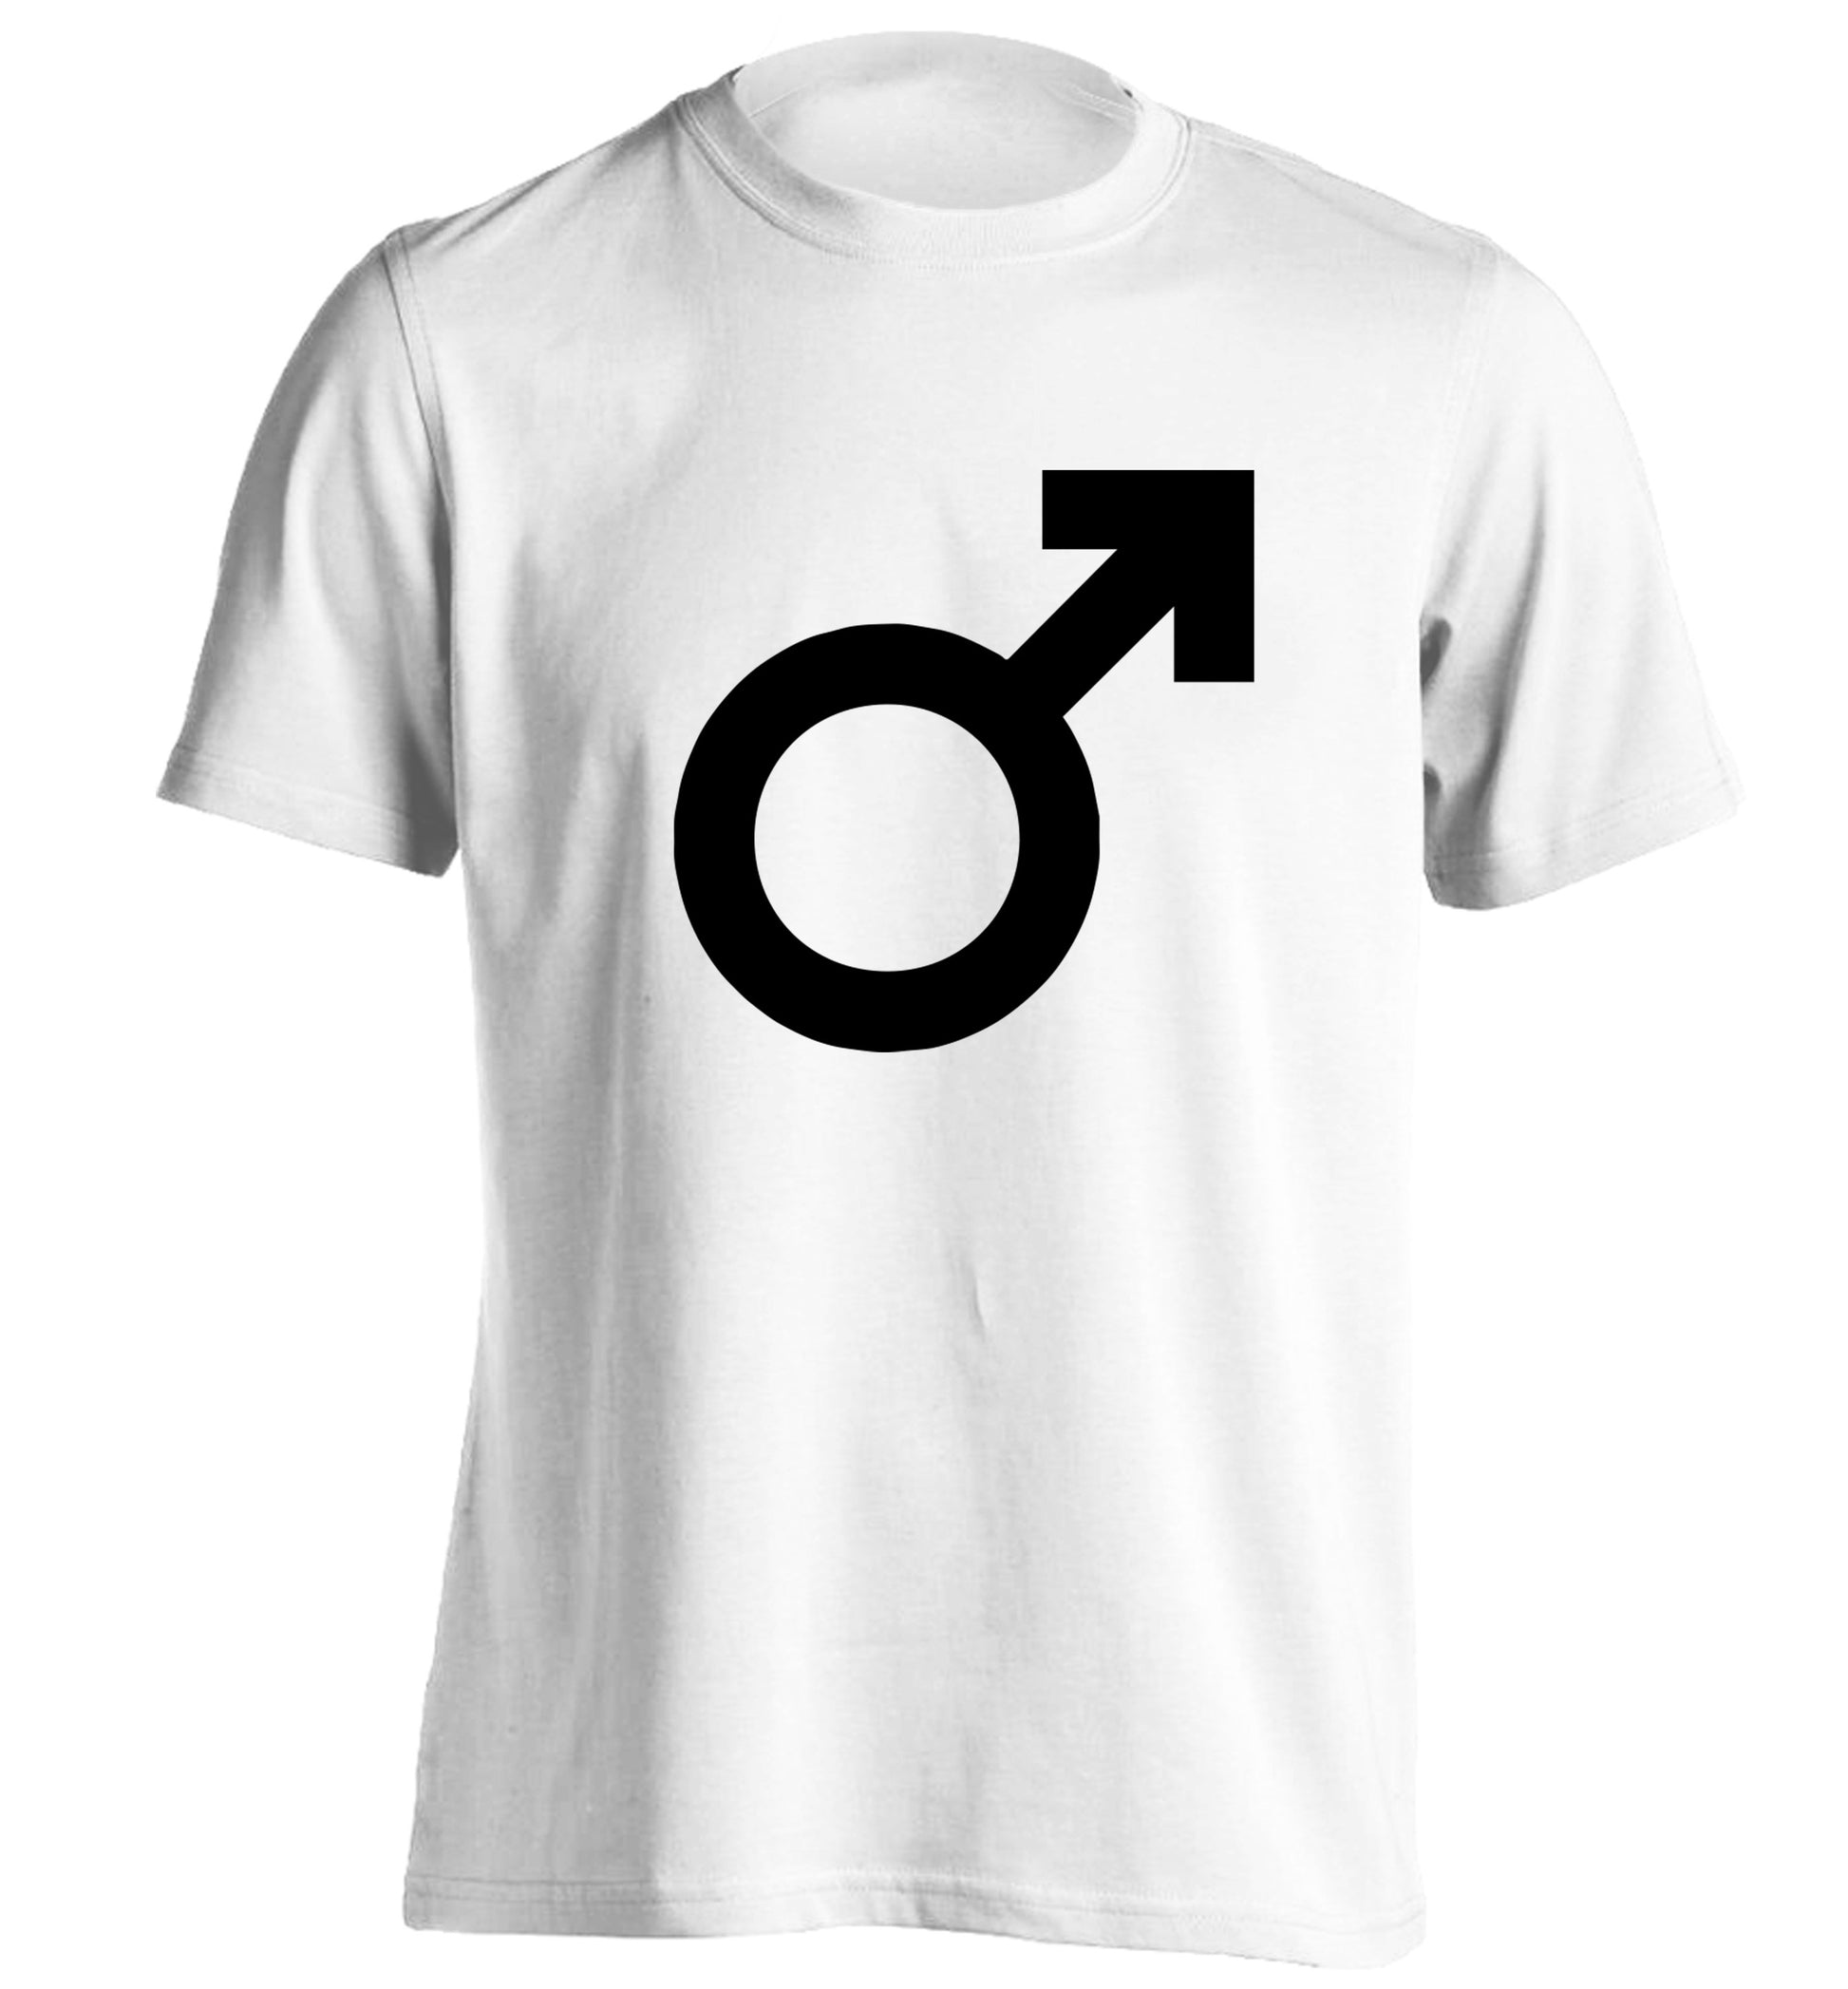 Male symbol large adults unisex white Tshirt 2XL